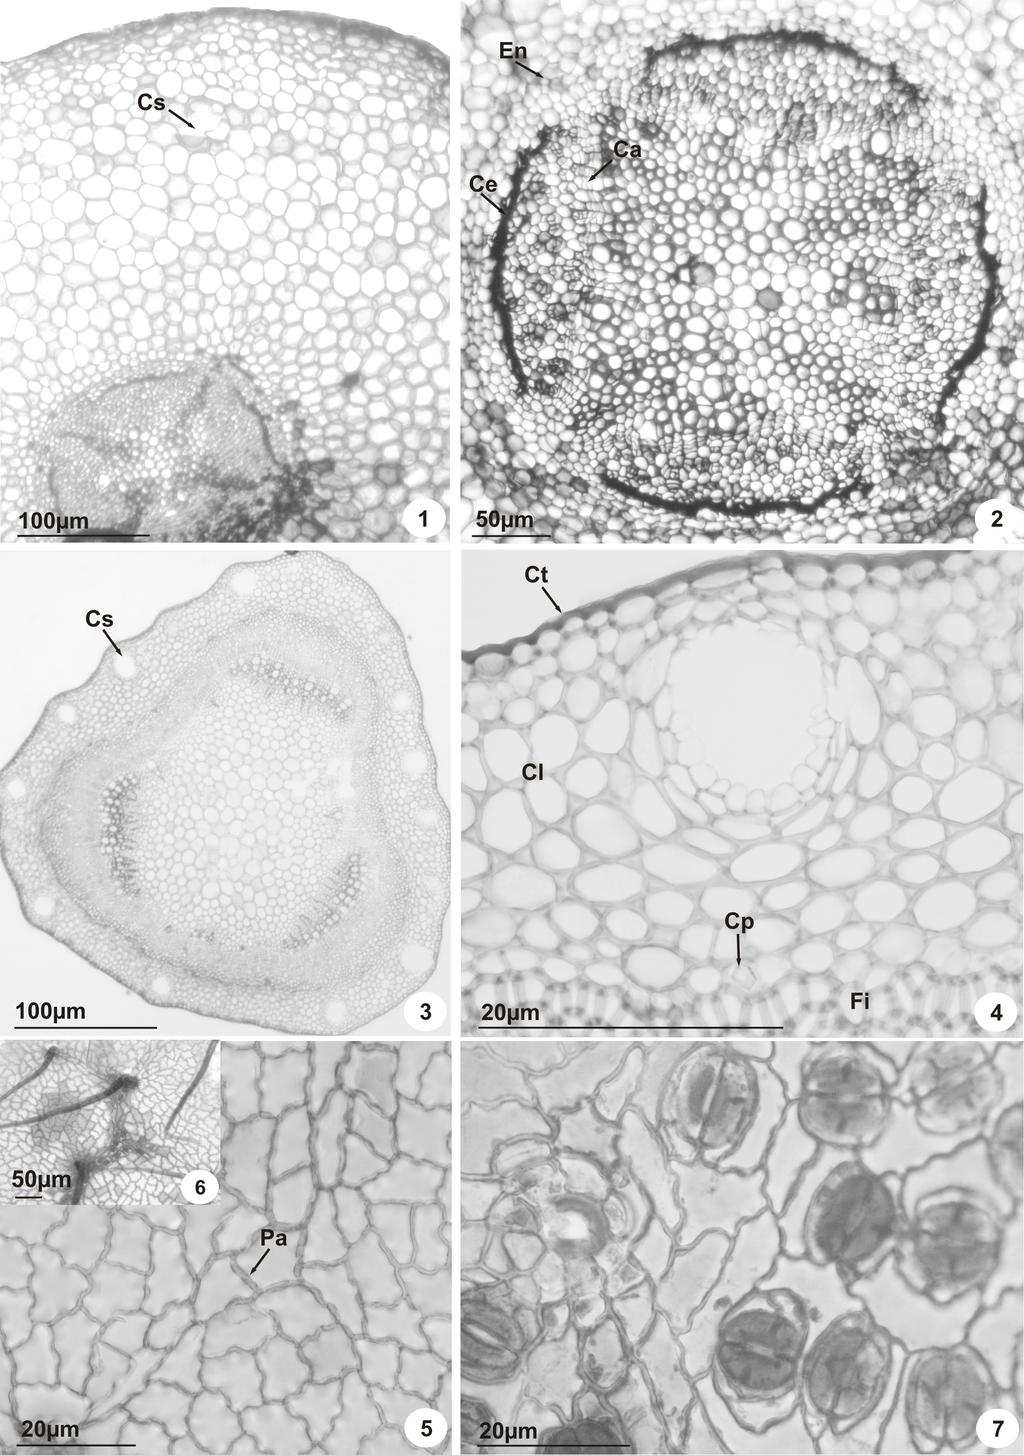 675 FIGURAS 1-7. Secções transversais do caule e raiz e paradérmicas da folha de Hymenaea martiana Hayne. 1. Vista geral da raiz: cavidade secretora em início de formação (Cs). 2.